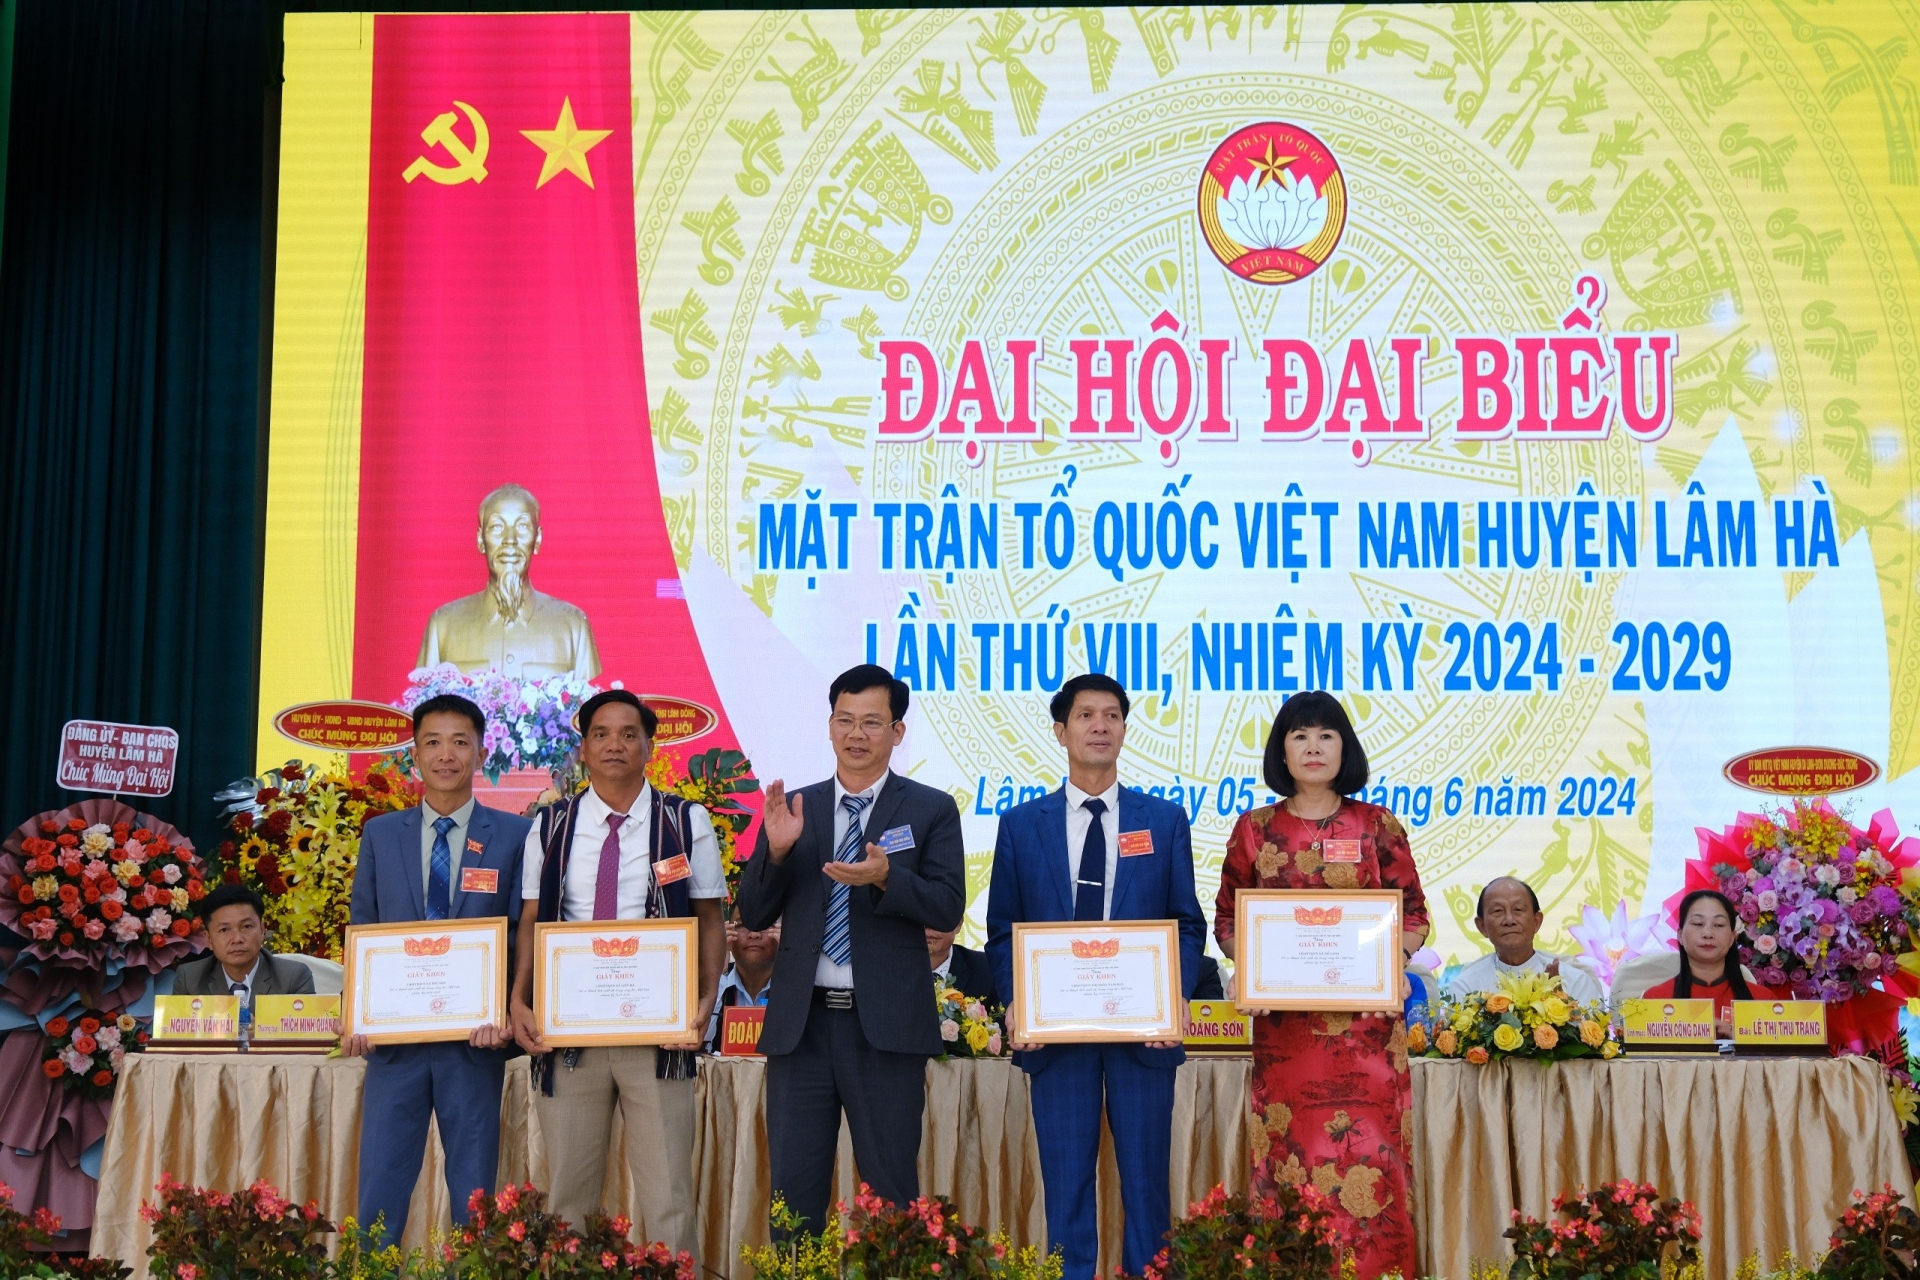 Lãnh đạo huyện Lâm Hà tặng bức trướng chúc mừng Đại hội